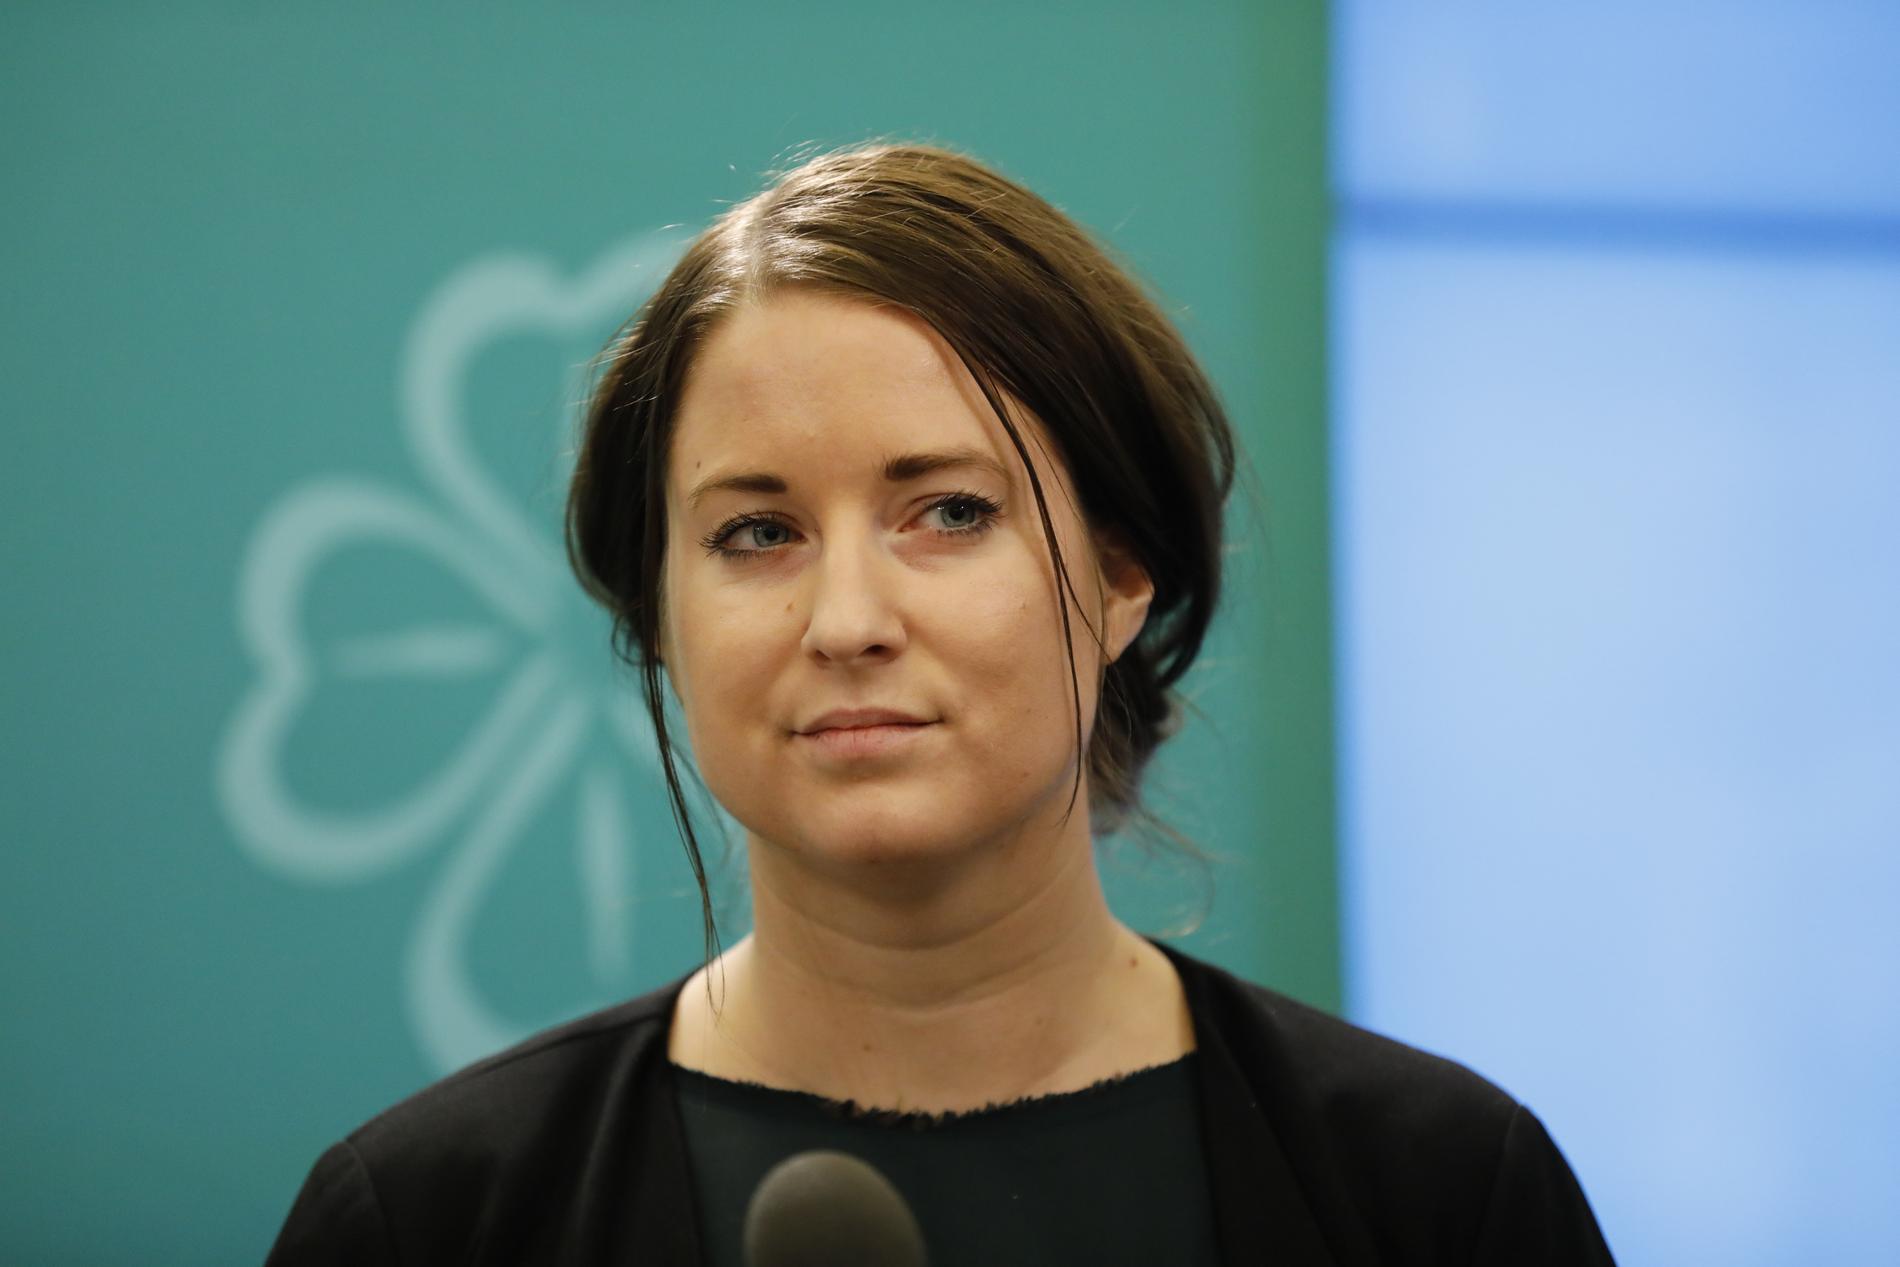 Emma Wiesner (C) är den färskaste svenska ledamoten av EU-parlamentet efter att under vintern ha ersatt avhoppade partikamraten Fredrick Federley. Arkivfoto.